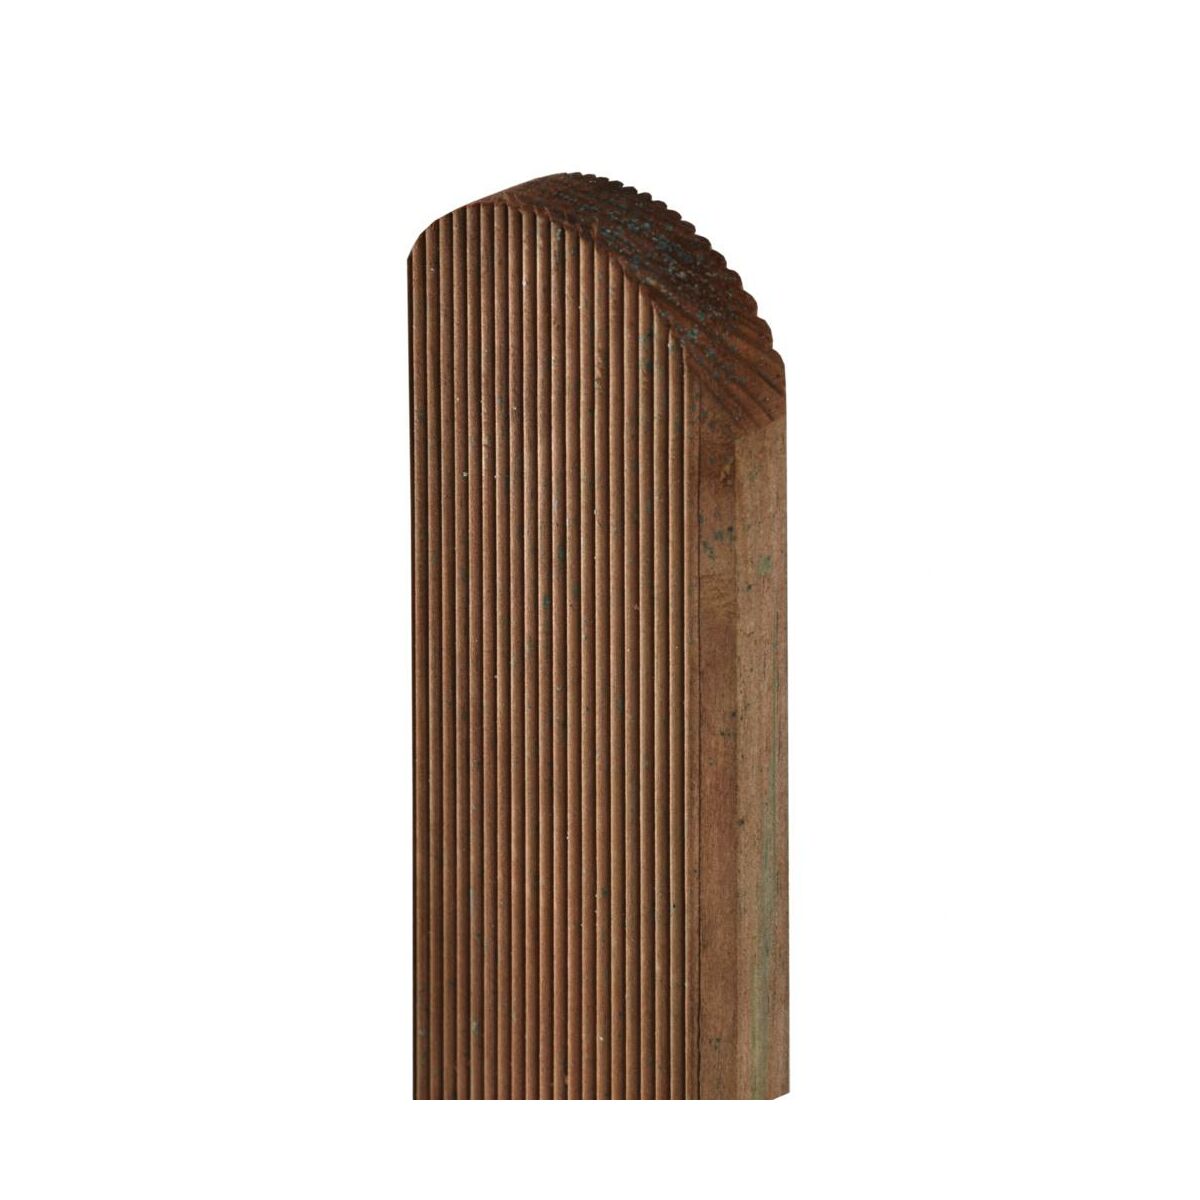 Sztacheta drewniana 9x2x150 cm ryflowana brązowa Sobex